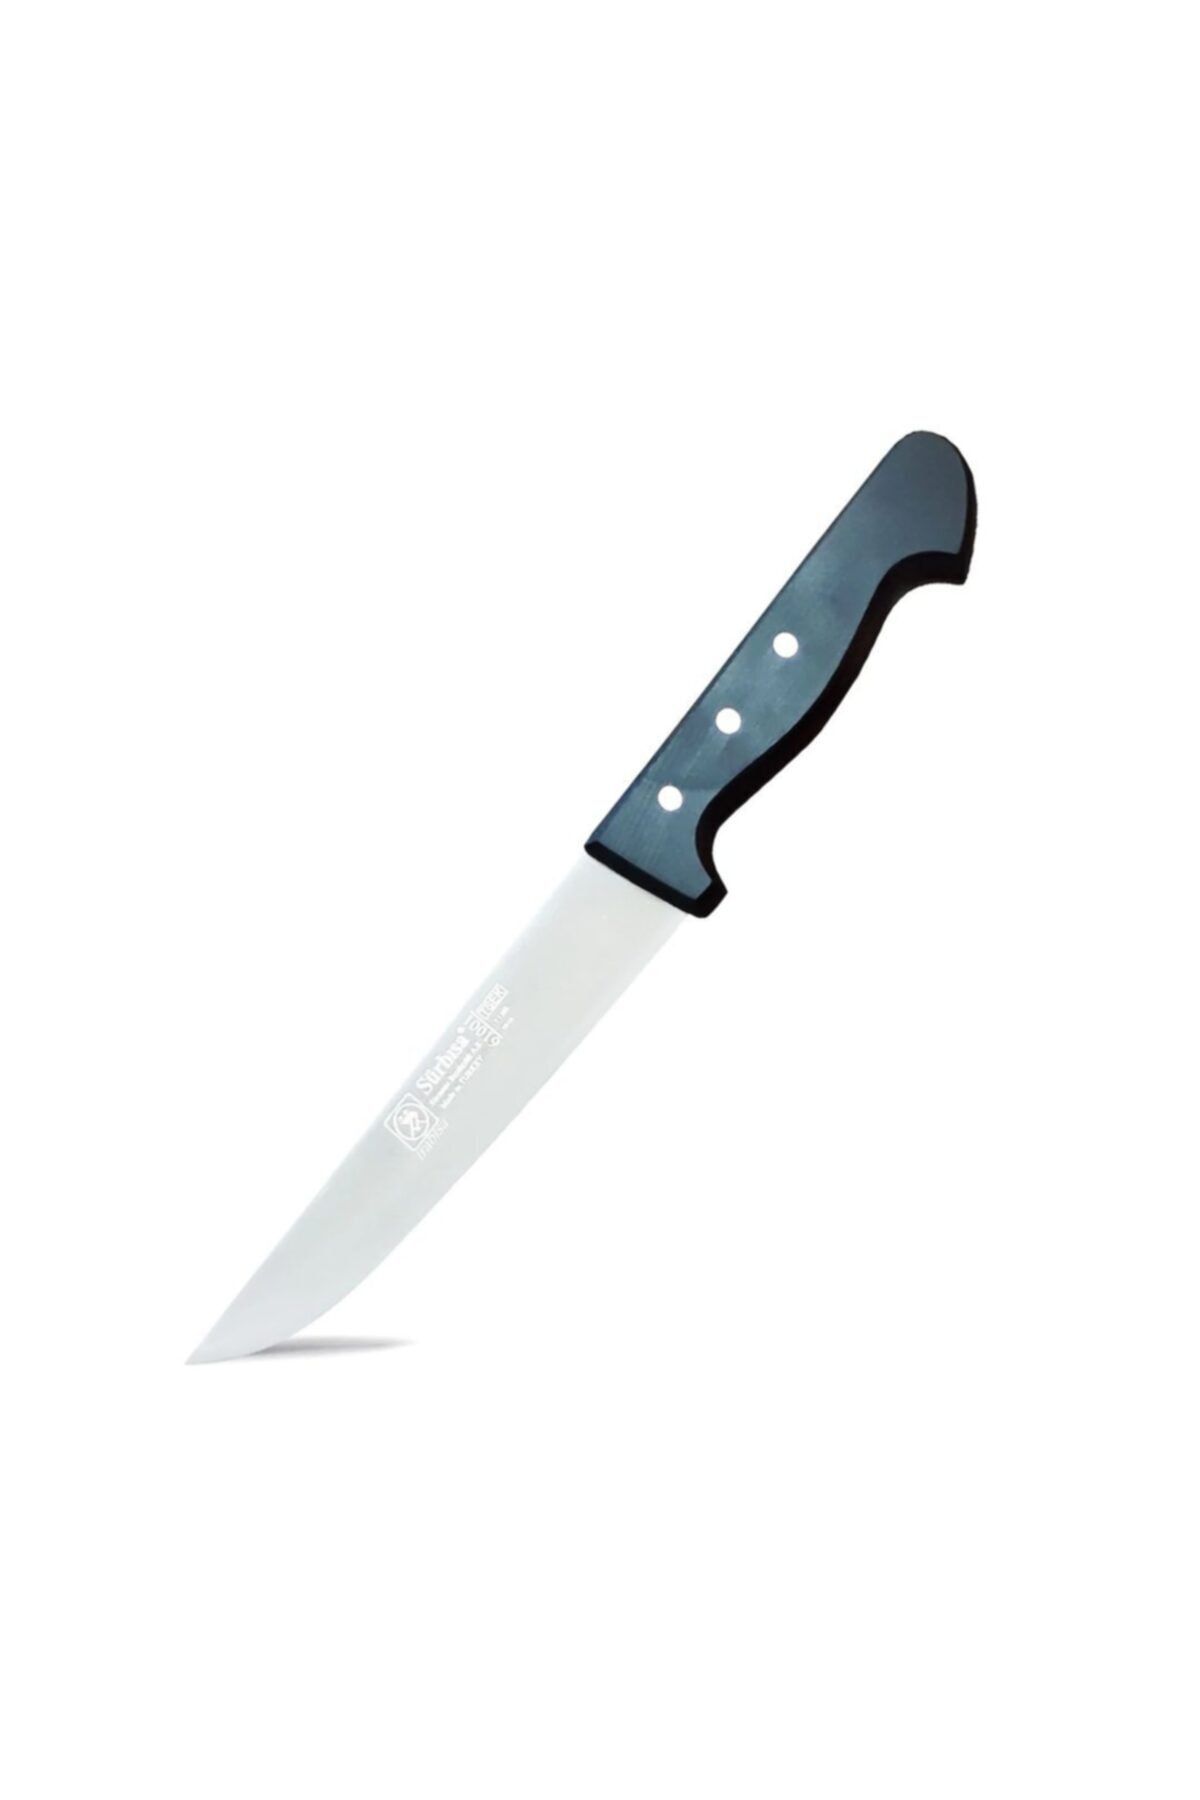 Sürbisa 61001 Mutfak Bıçağı